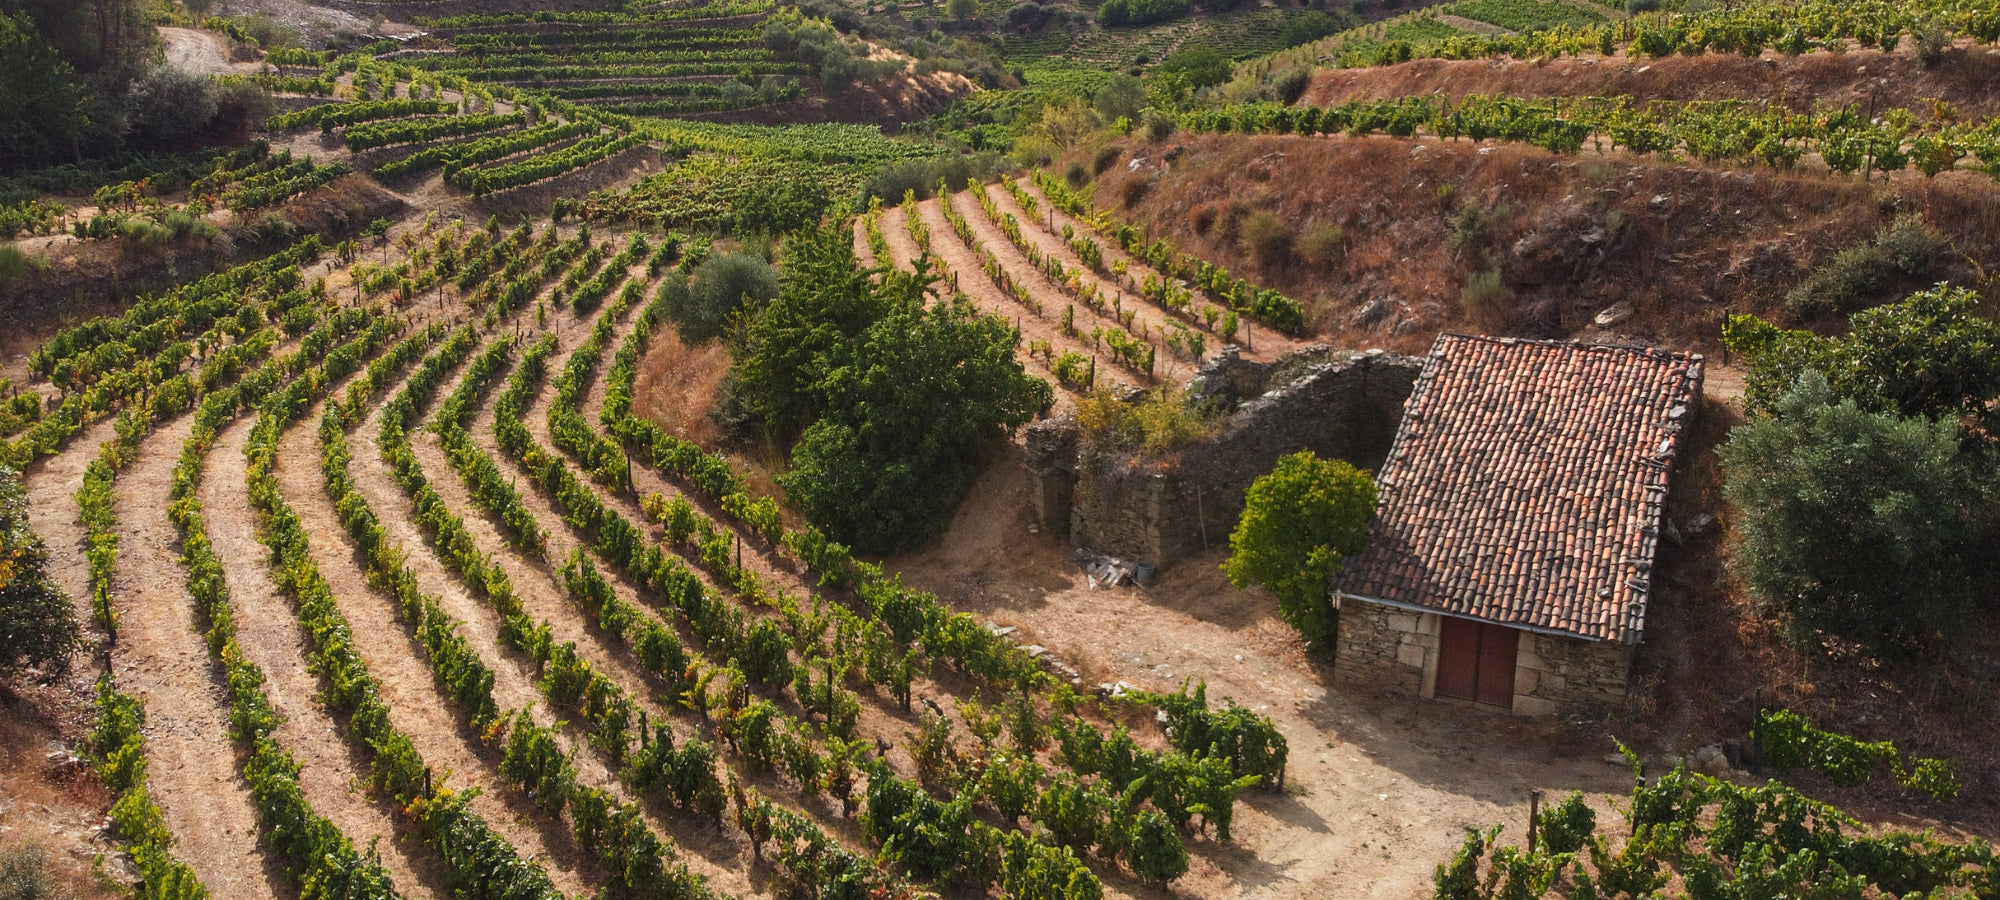 Altes Weingut in der Gegend Arinto in Portugal. Kleines Haus in den Weinbergen.